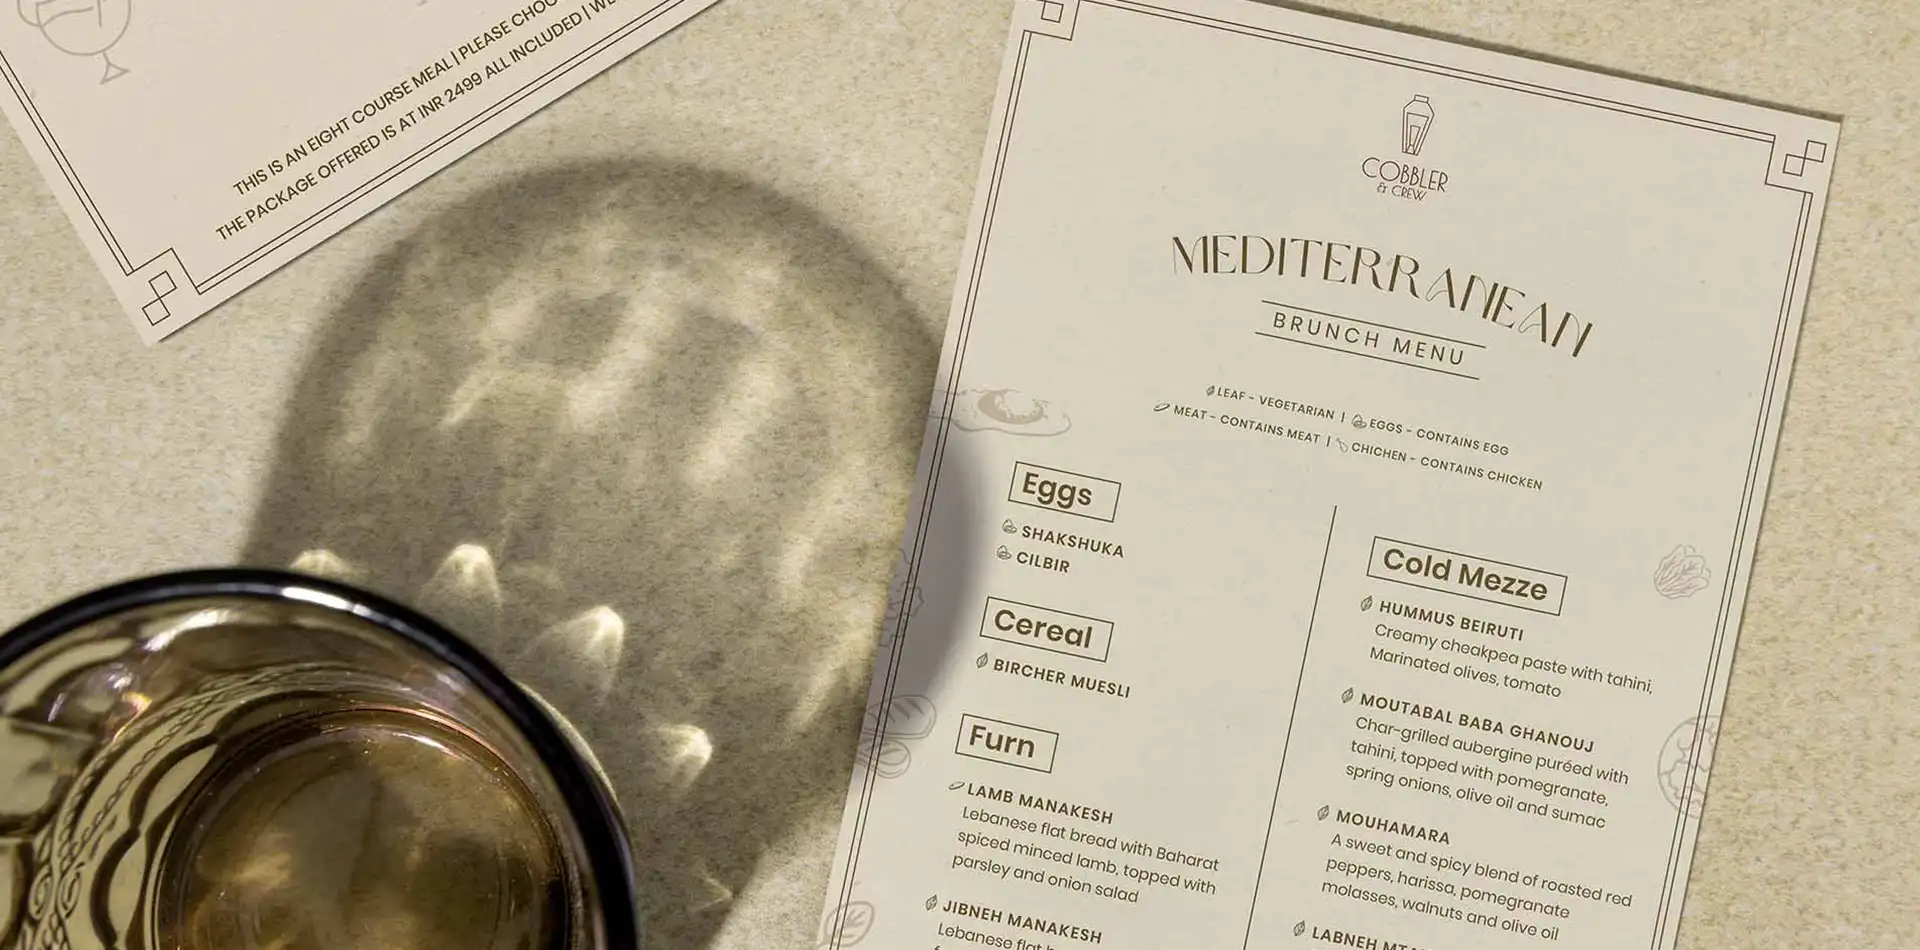 Mediterranean brunch menu on textured background with cocktail glass.